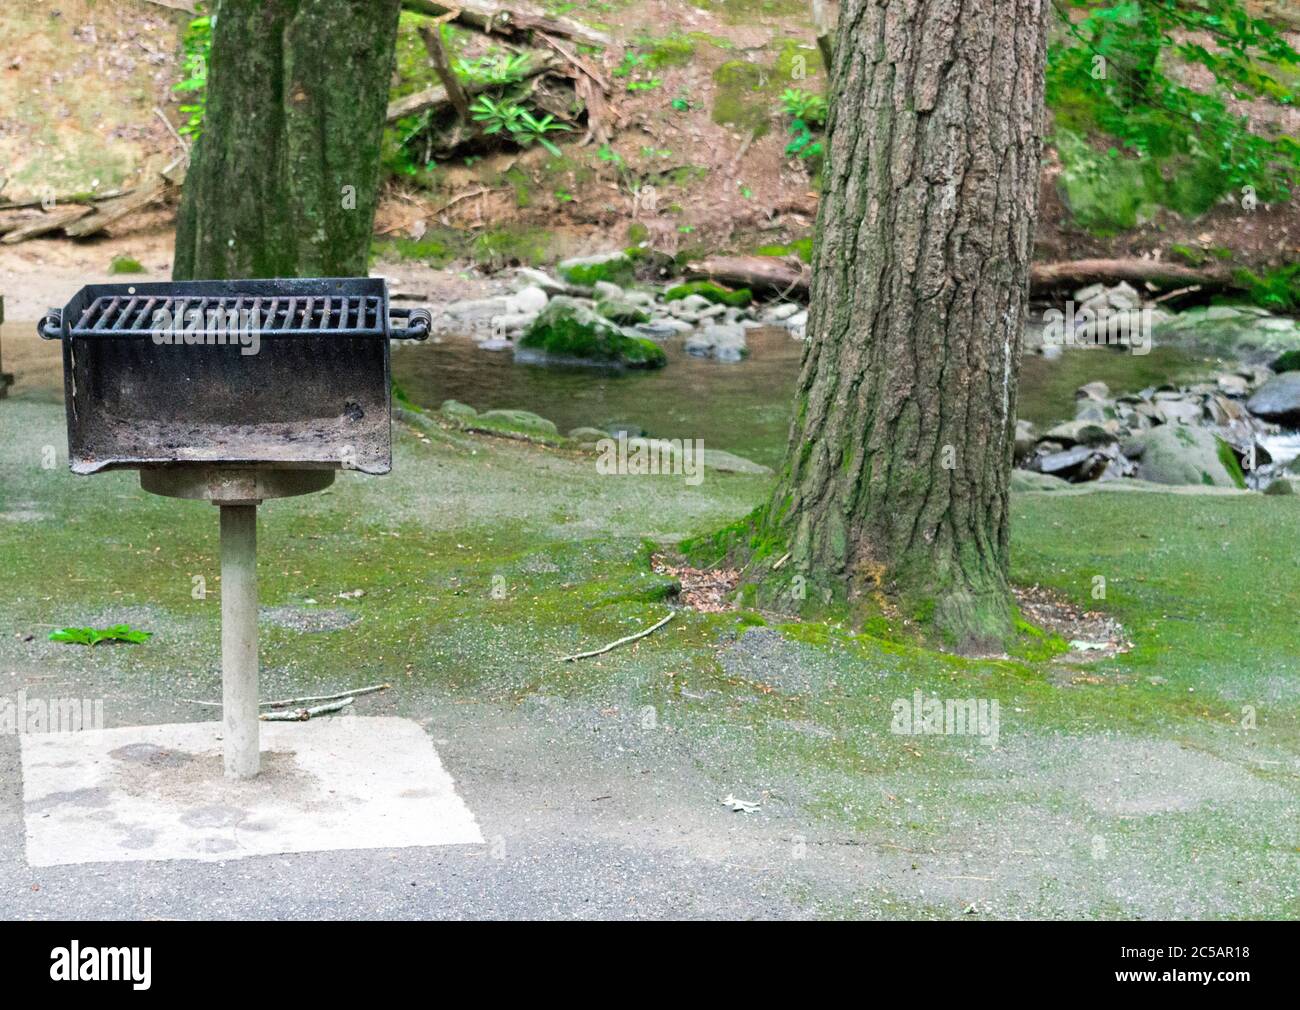 Horizontale Aufnahme eines stark genutzten Grills an einem Picknickplatz mit Bäumen und einem Bach dahinter. Stockfoto